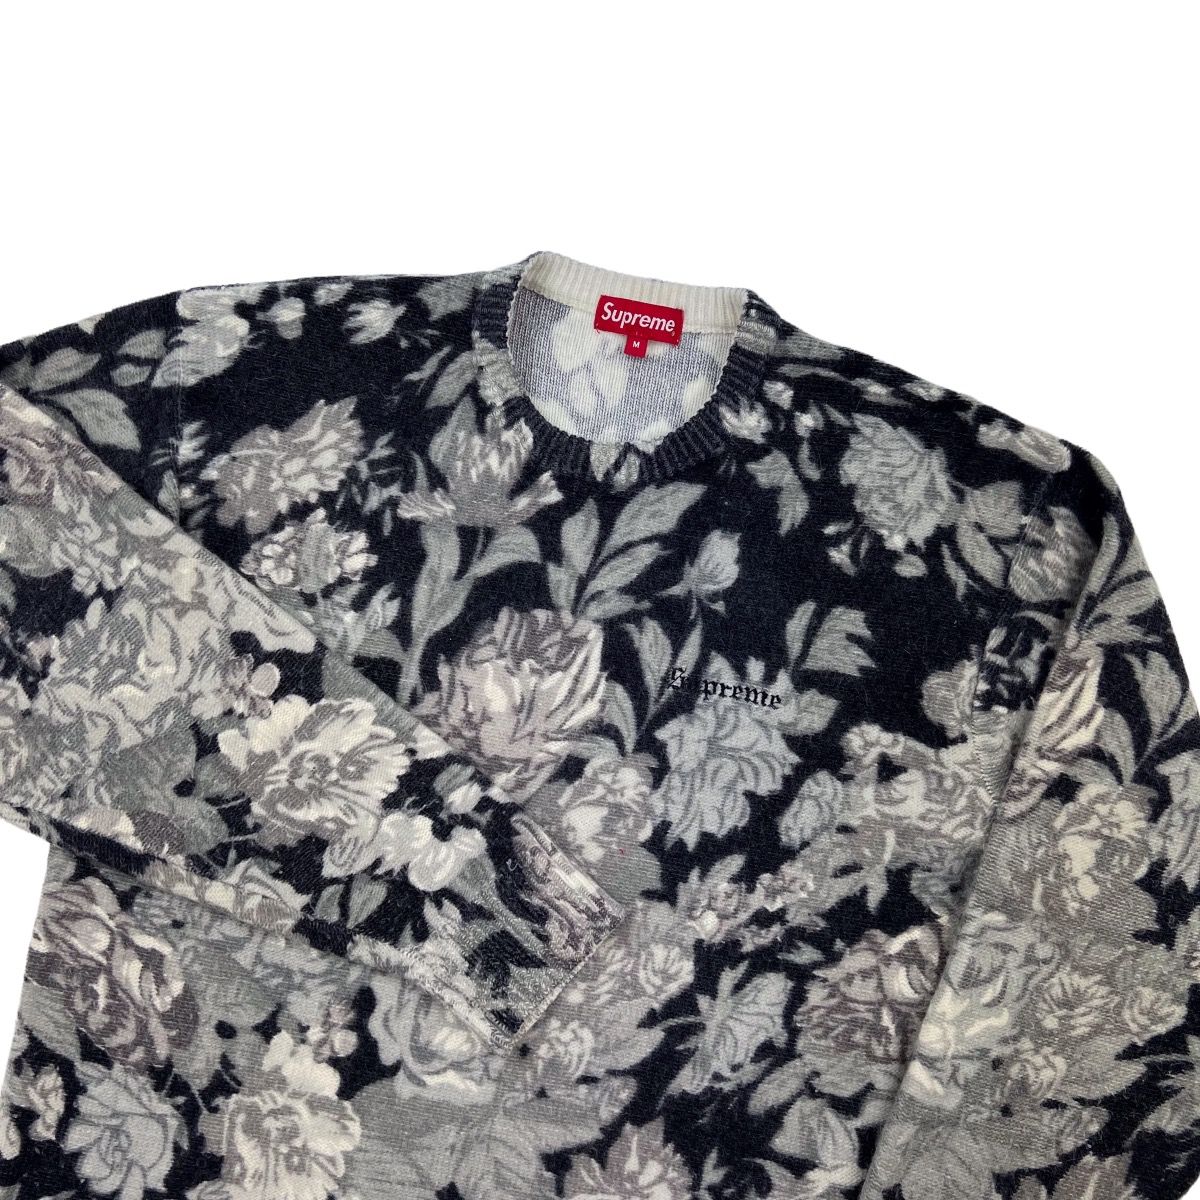 Supreme Supreme Floral Angora Sweater | Grailed